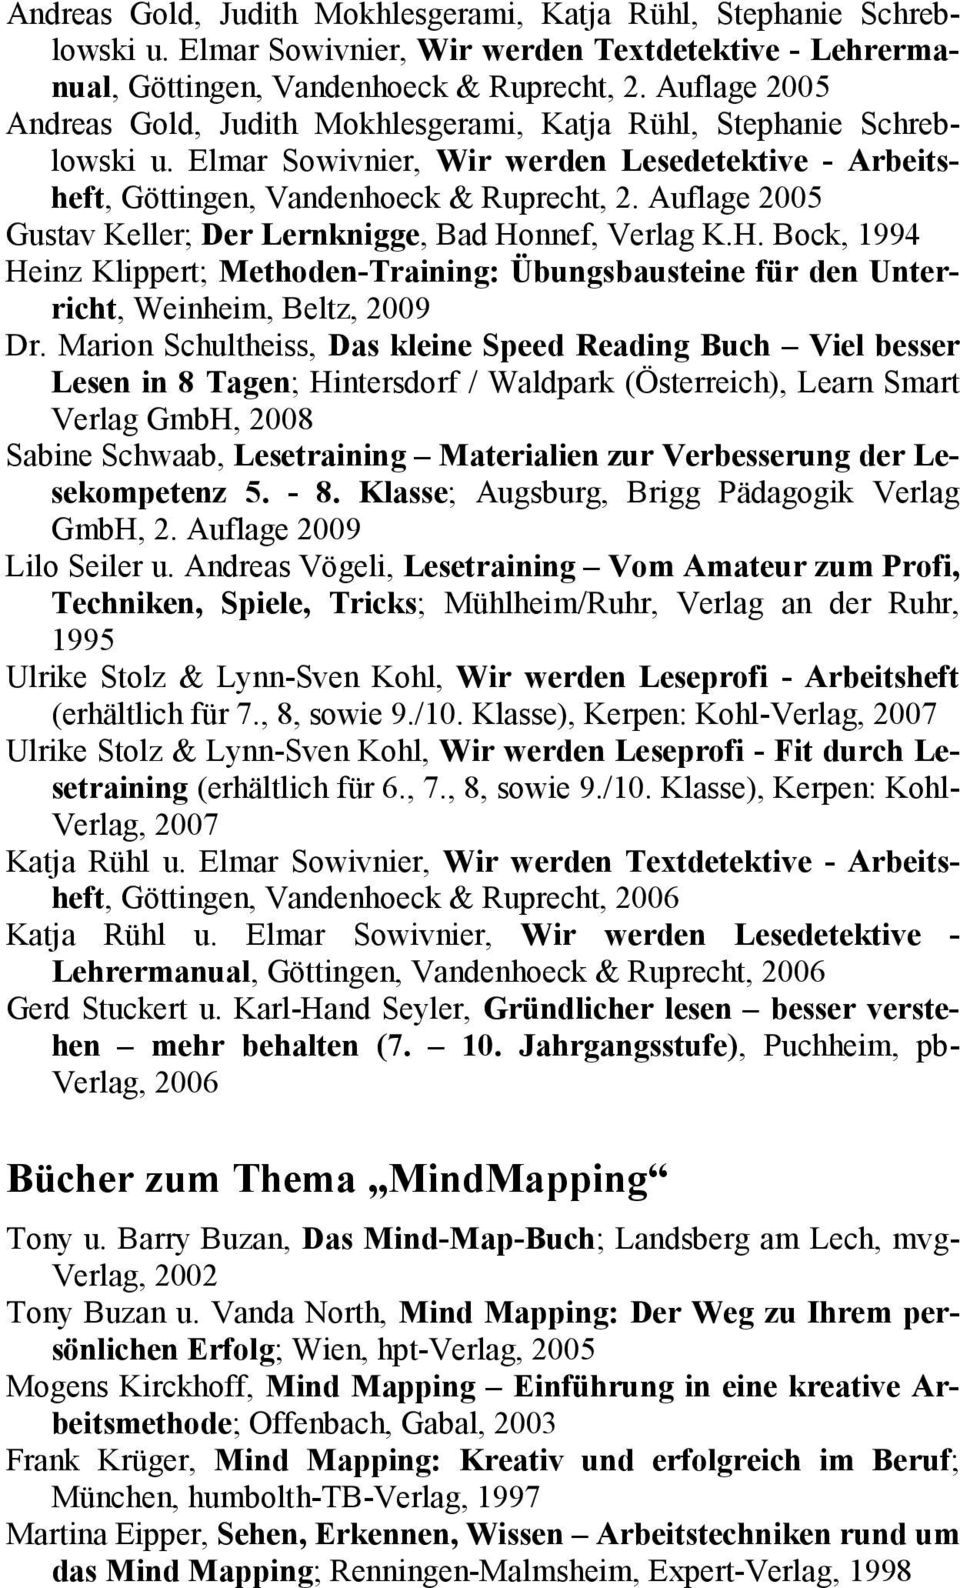 Auflage 2005 Gustav Keller; Der Lernknigge, Bad Honnef, Verlag K.H. Bock, 1994 Heinz Klippert; Methoden-Training: Übungsbausteine für den Unterricht, Weinheim, Beltz, 2009 Dr.